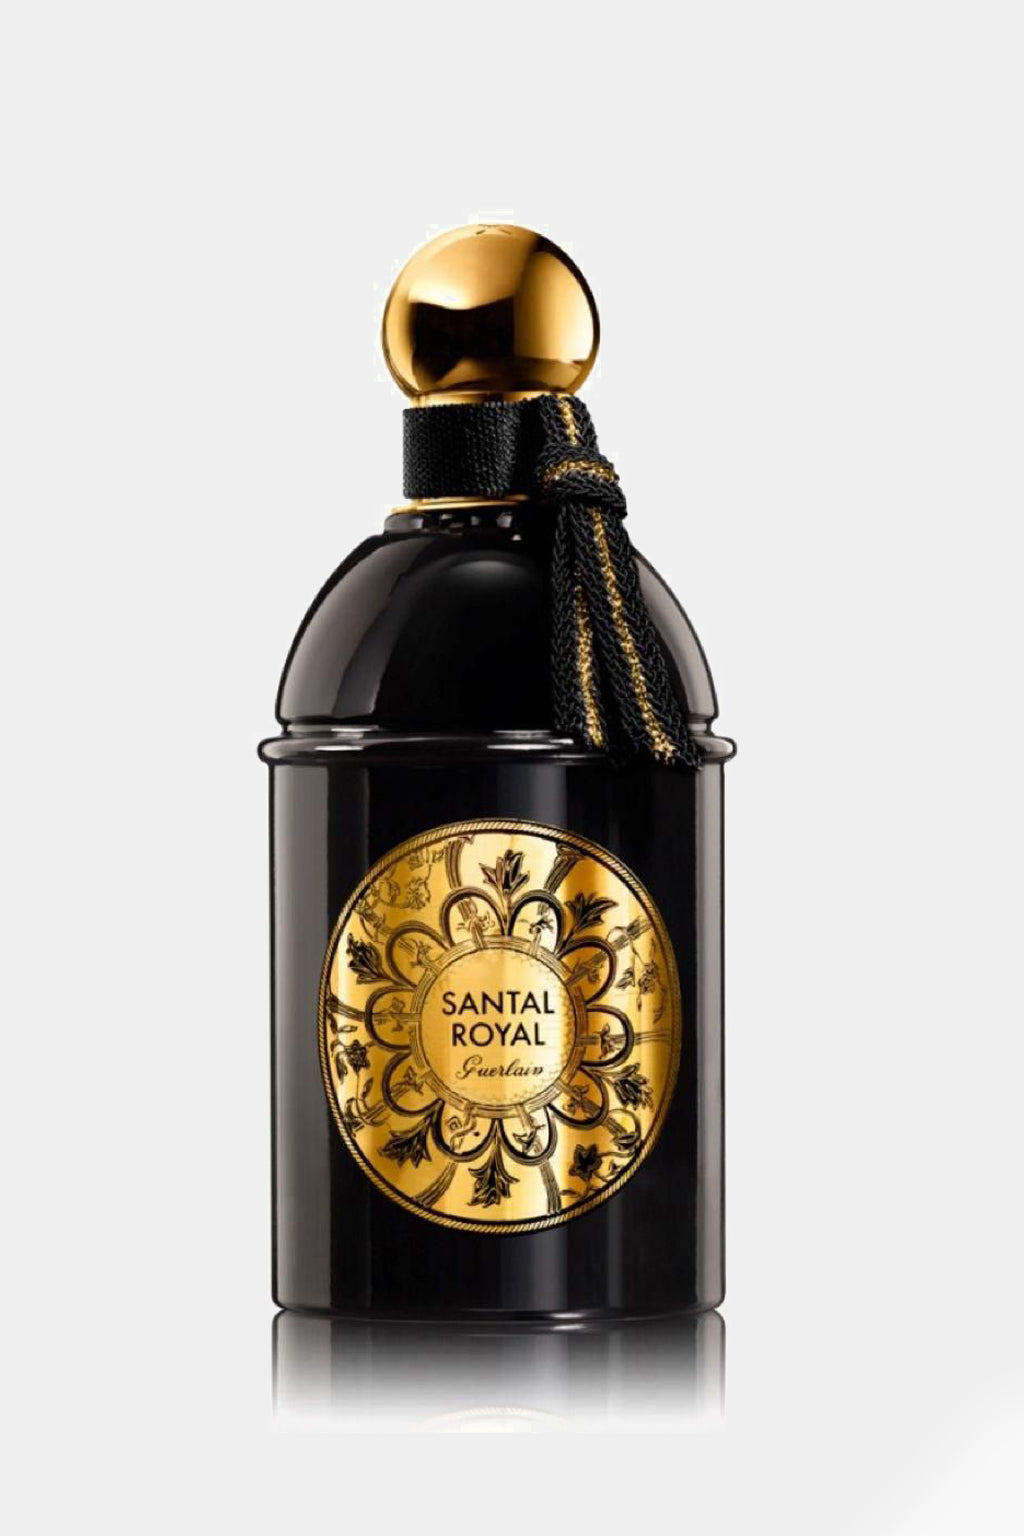 Guerlain - Santal Royal Eau de Parfum